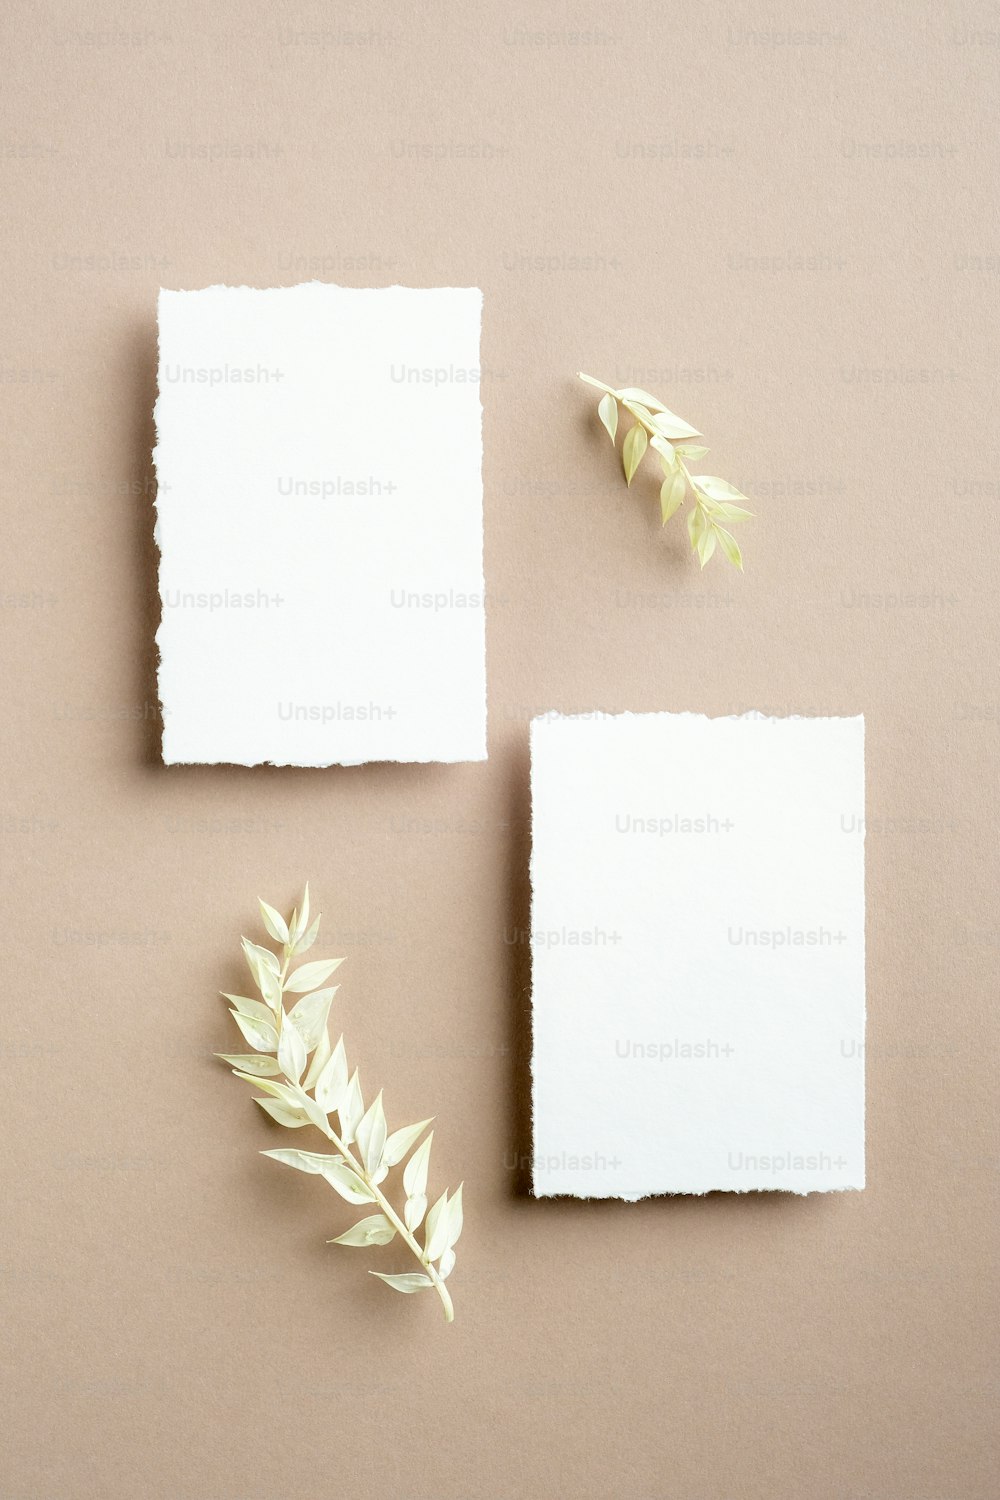 Leere Einladungskarten. Flache Lage, Draufsicht. Leere weiße Hochzeitspapeterie-Modelle mit getrockneten Blättern auf pastellbeigem Hintergrund.